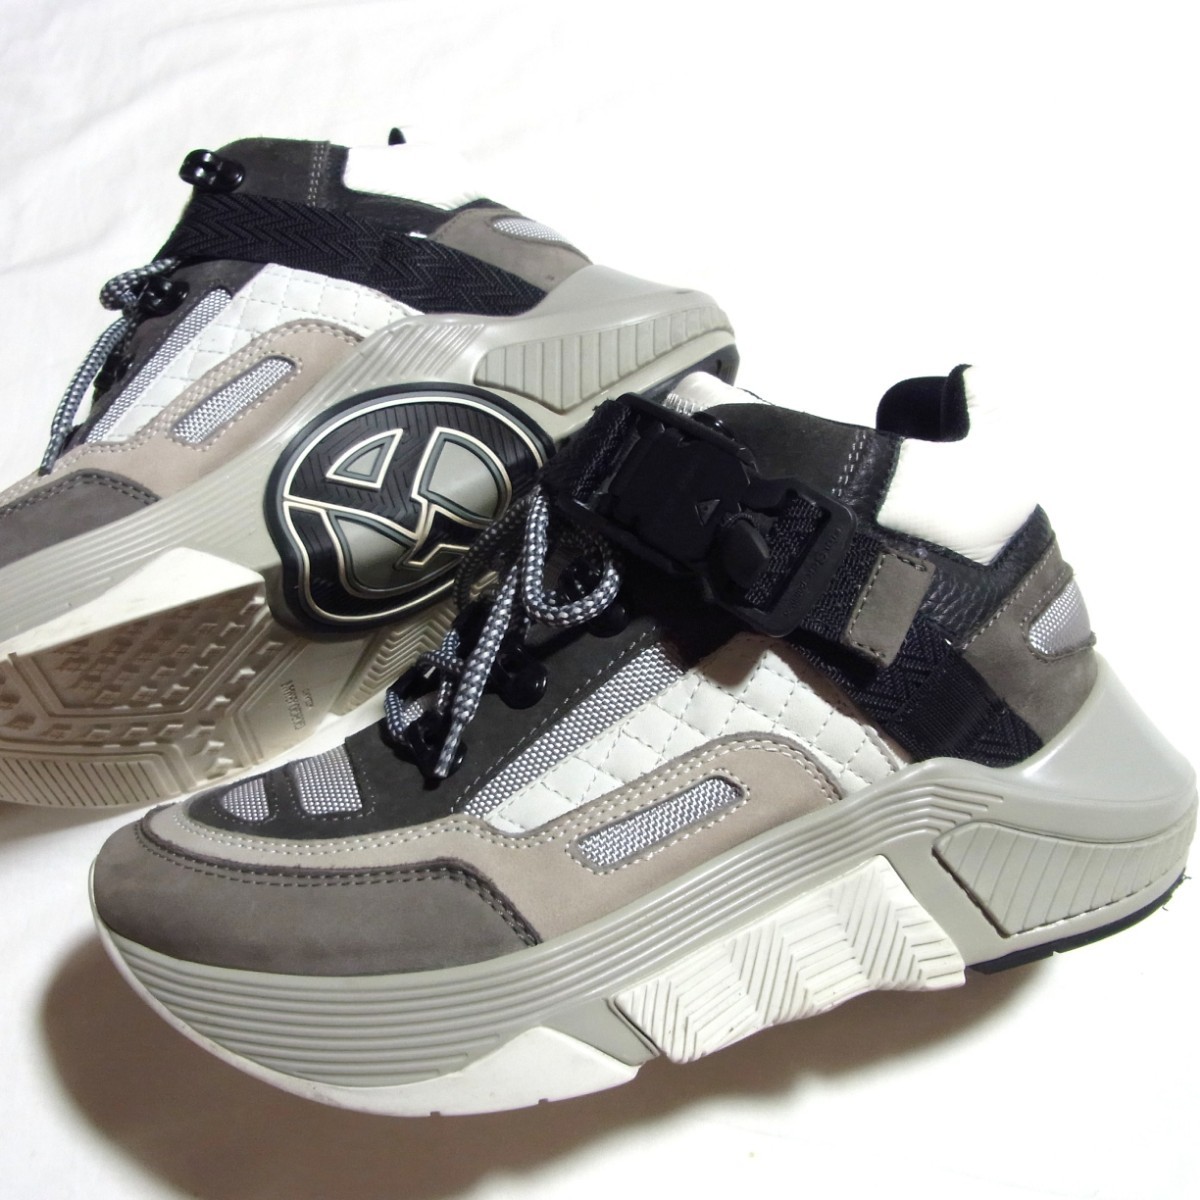 GIORGIO ARMANIjoru geo Armani leather dado sneakers UK6 X2X133 XM647